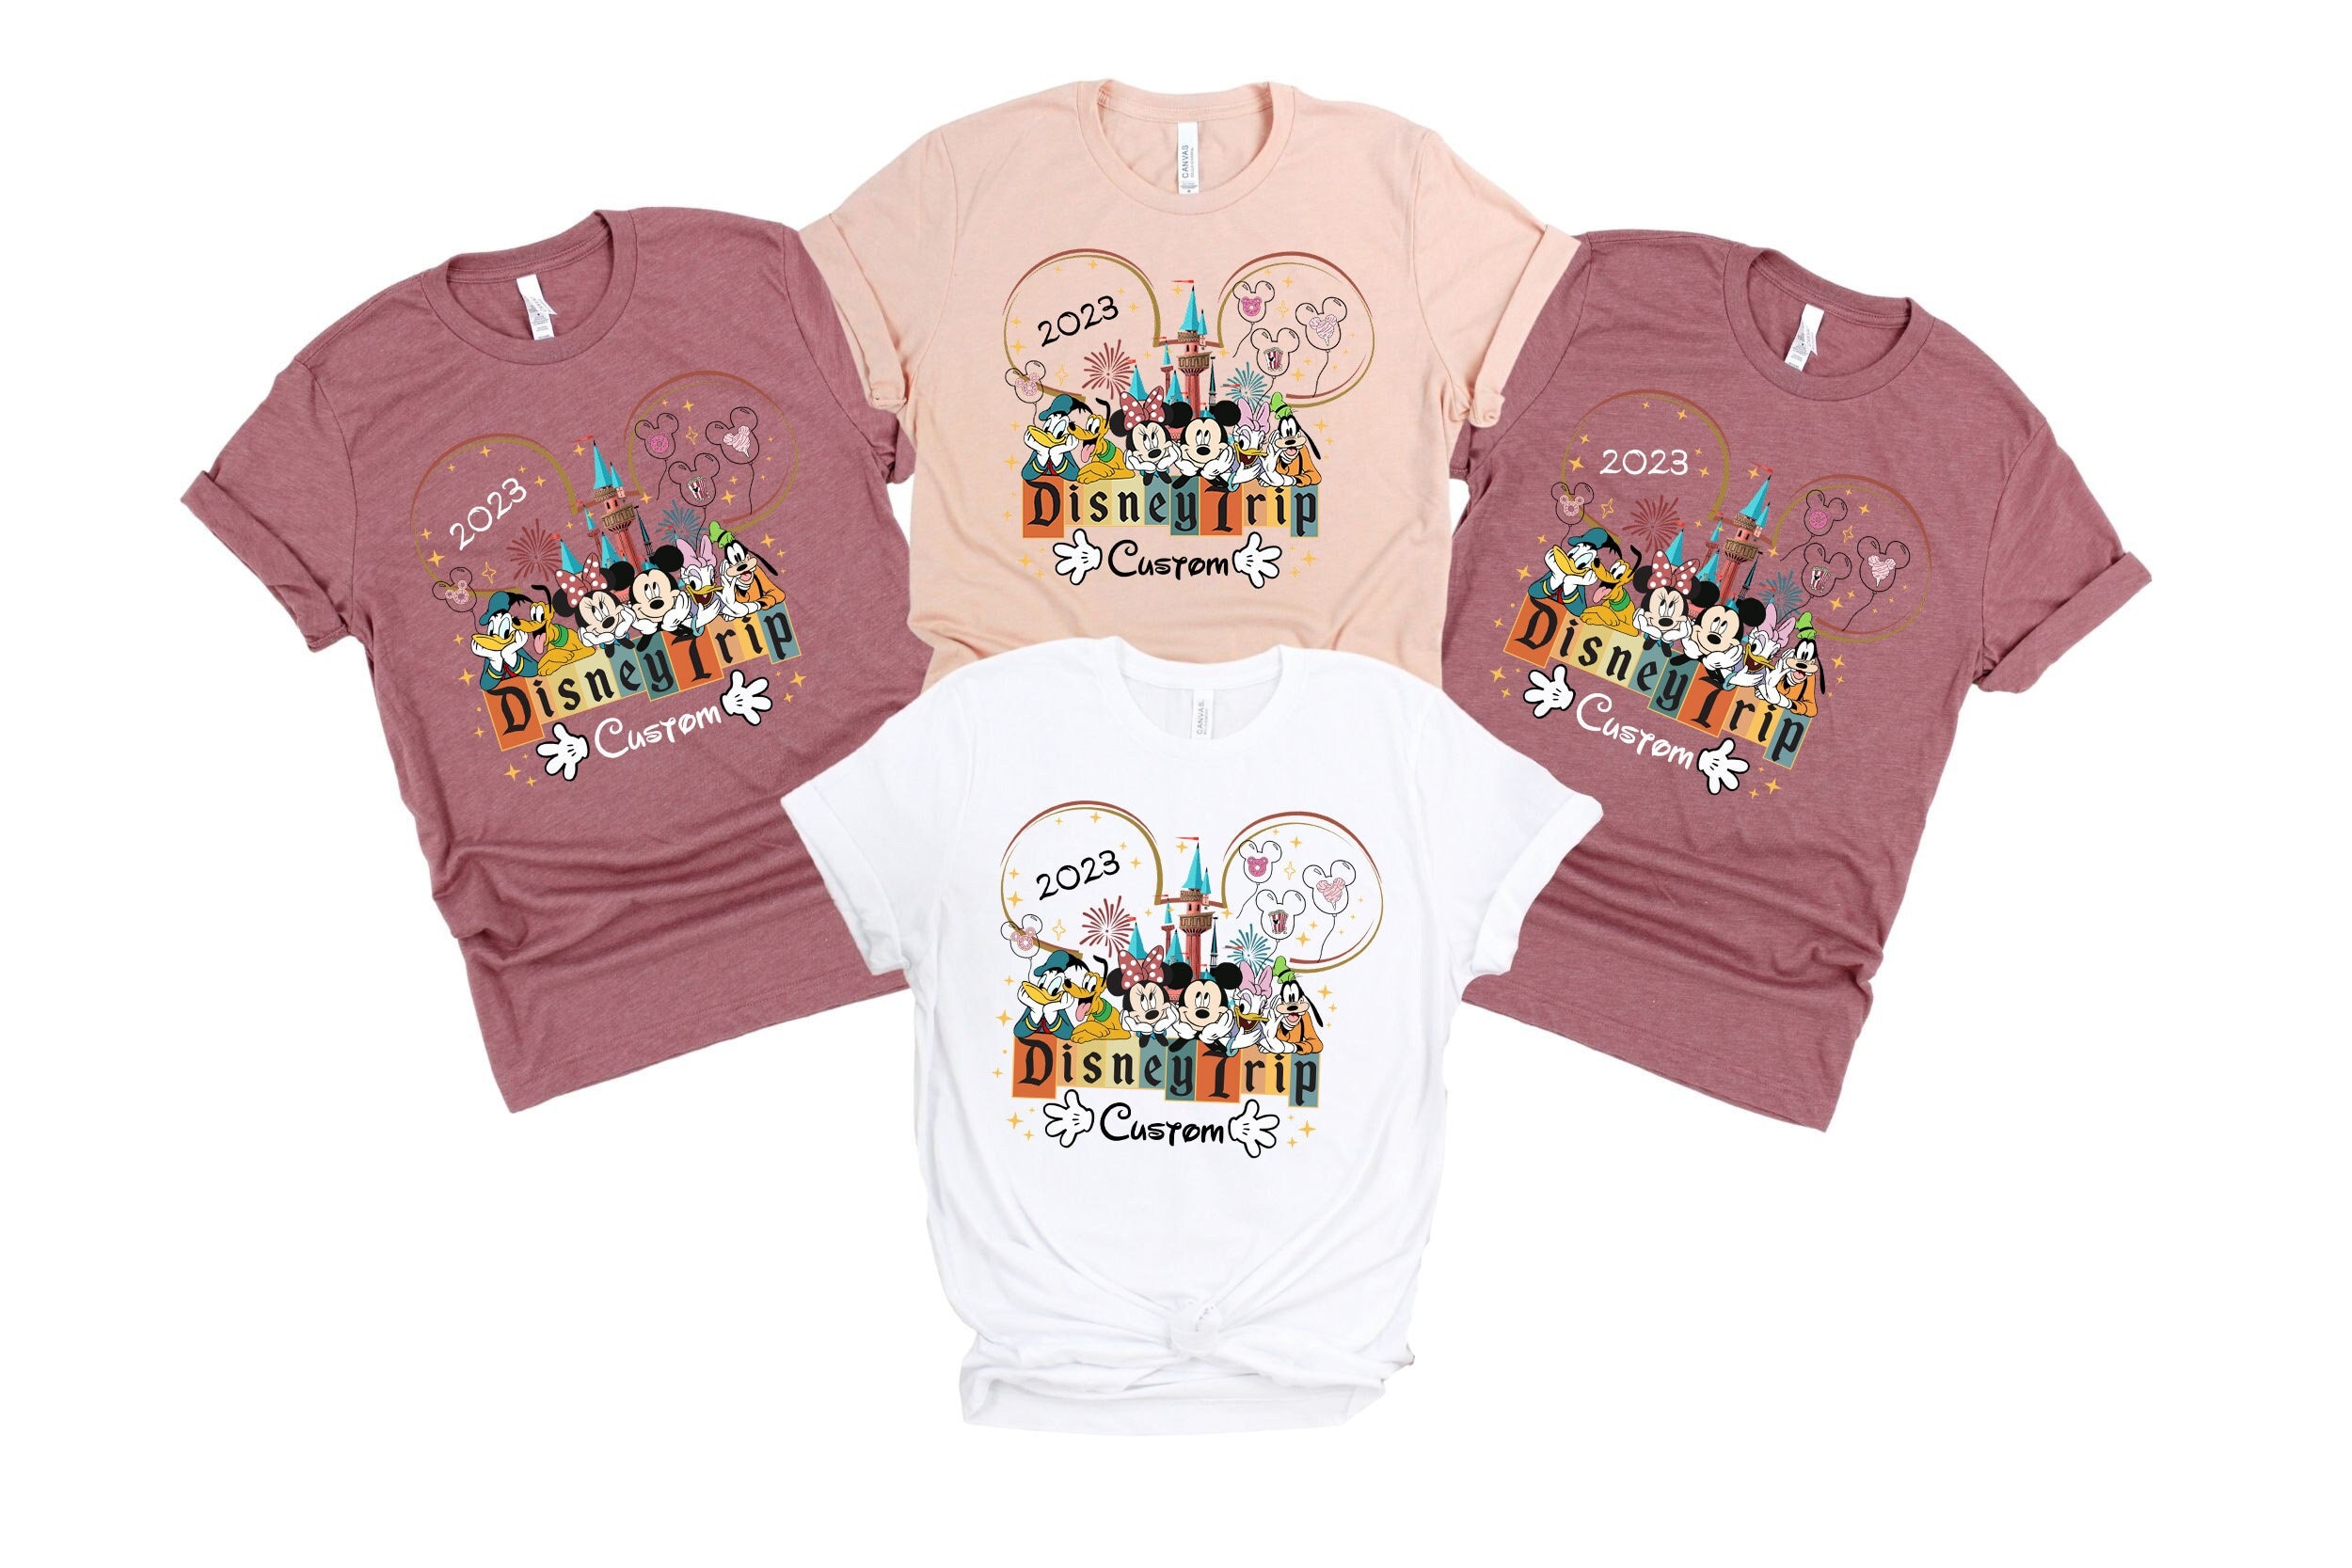 Discover Custom Disney Trip 2023 Shirt, Vacation Disney, Family Trip 2023 Shirt, Disney Trip Shirt